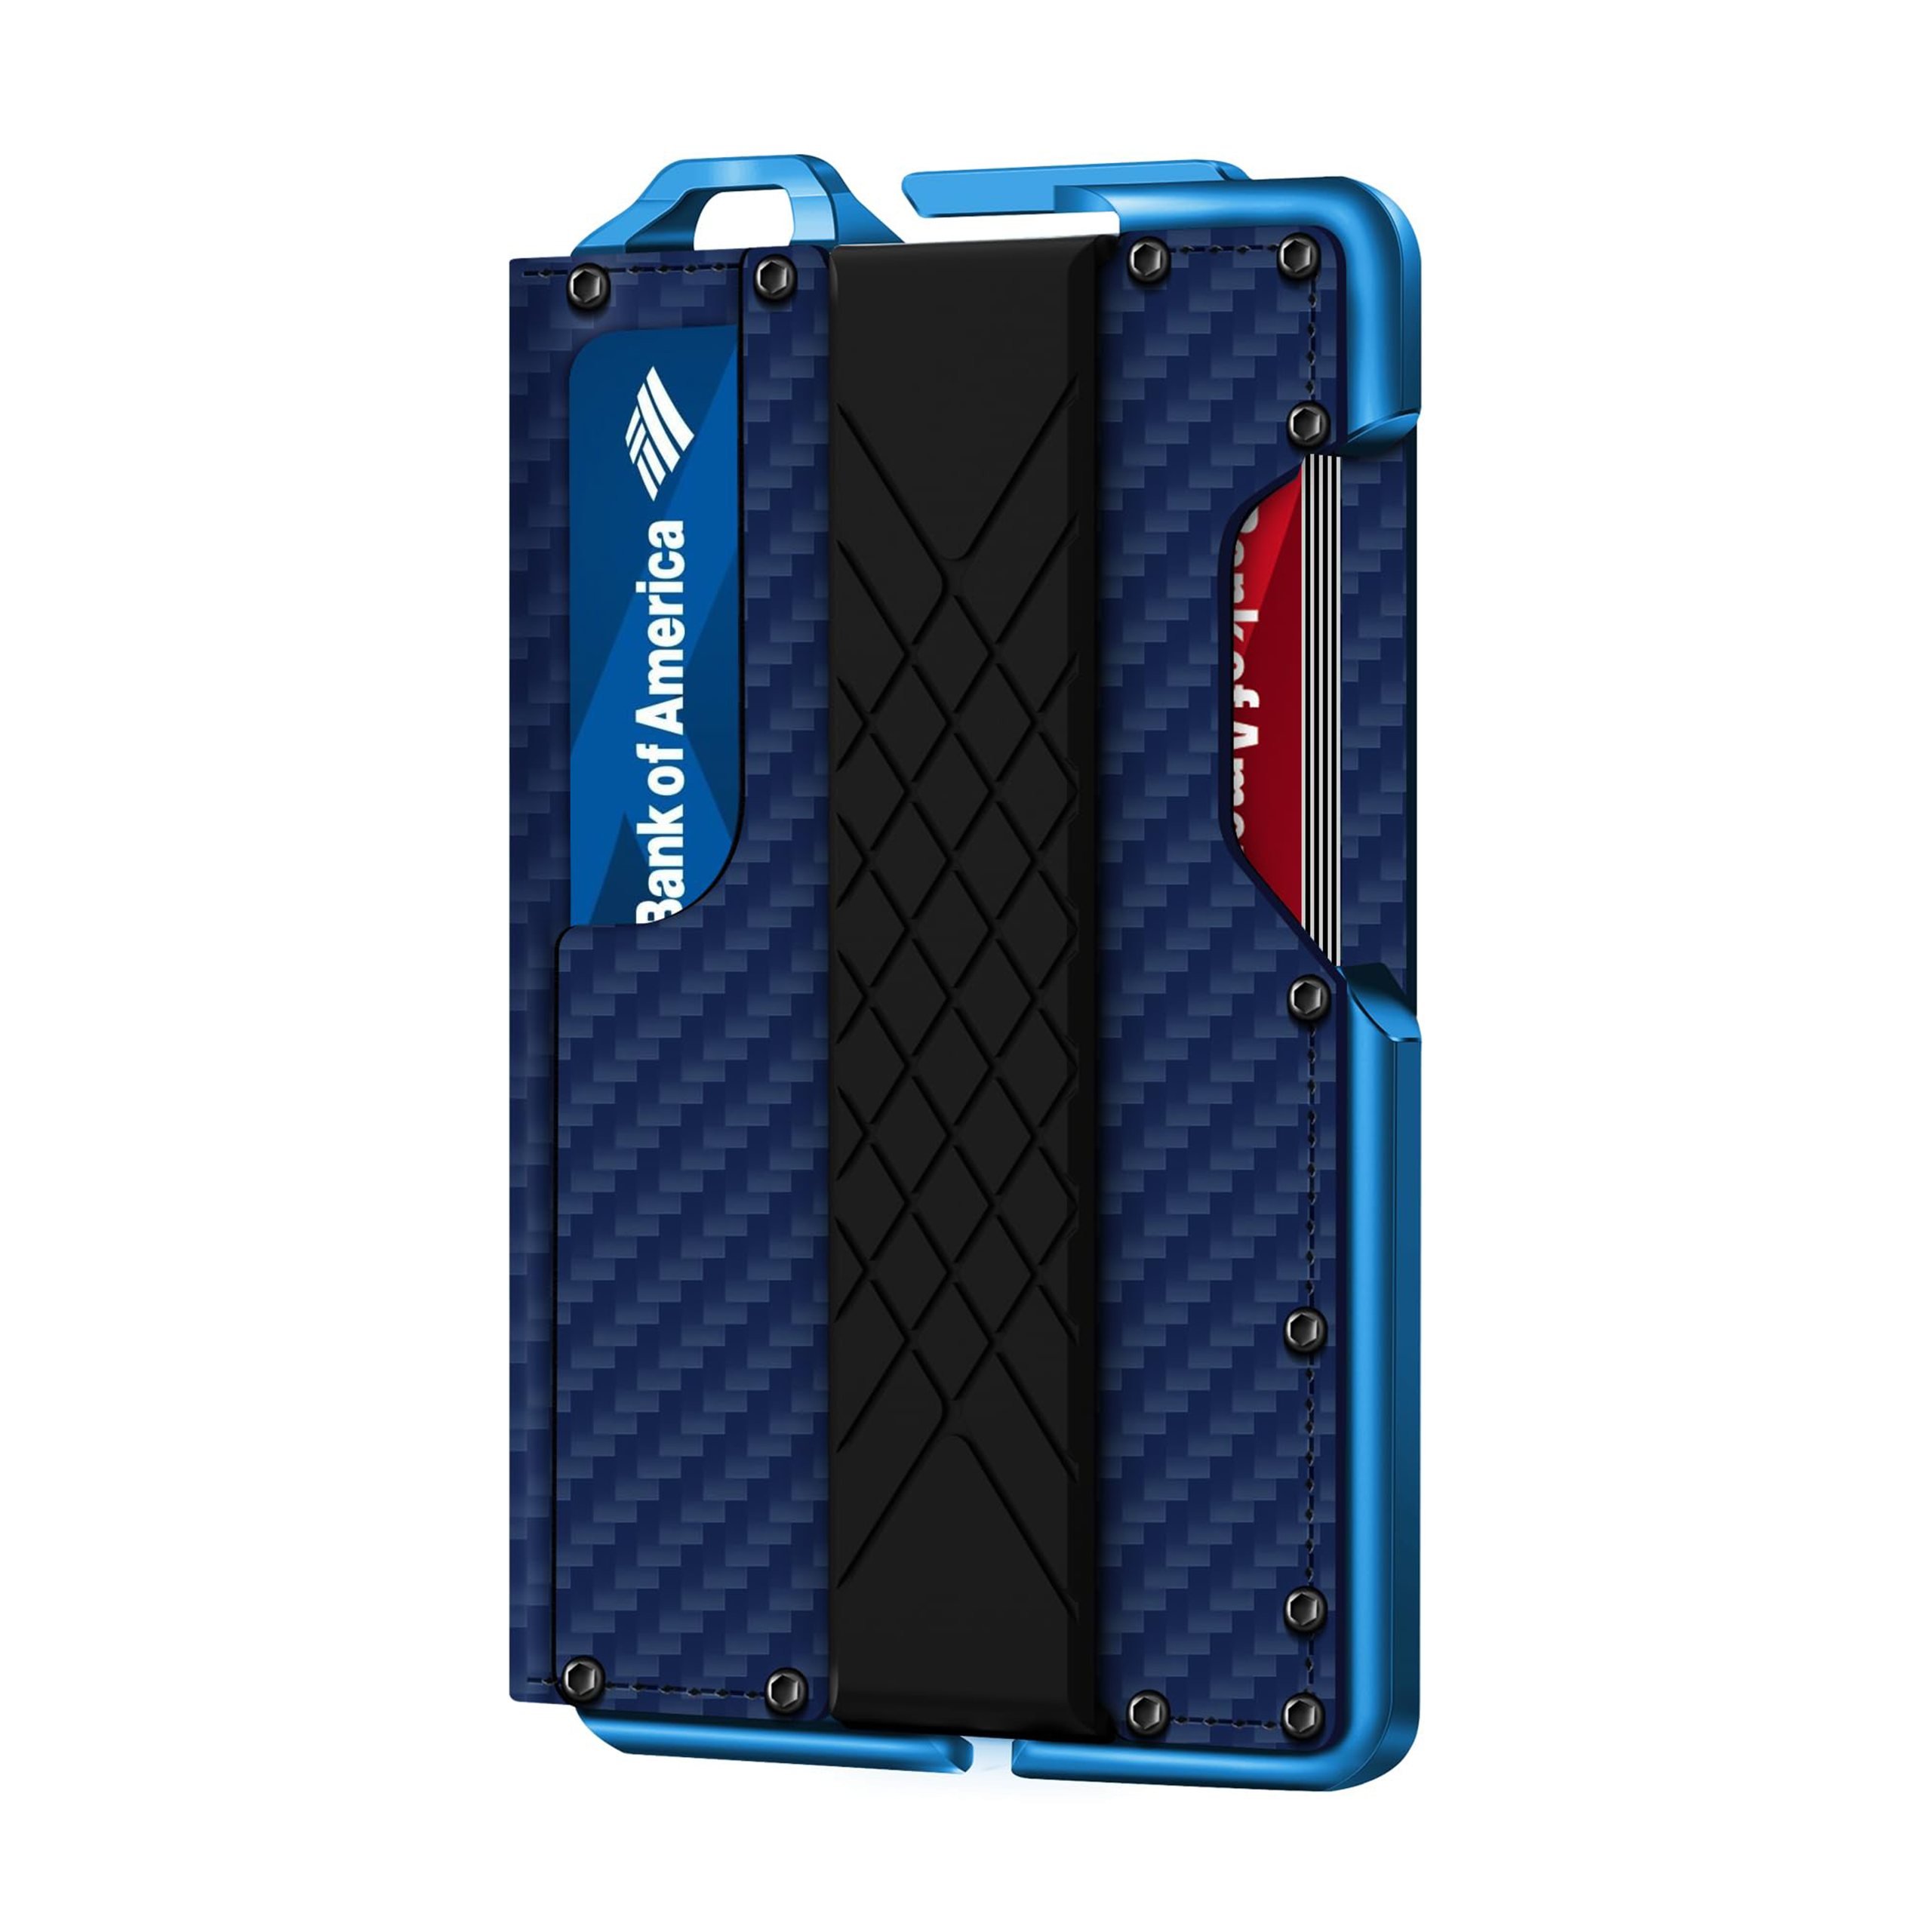 H01 - Dapper Bifold Wallet - Carbon Fiber Blue Pattern